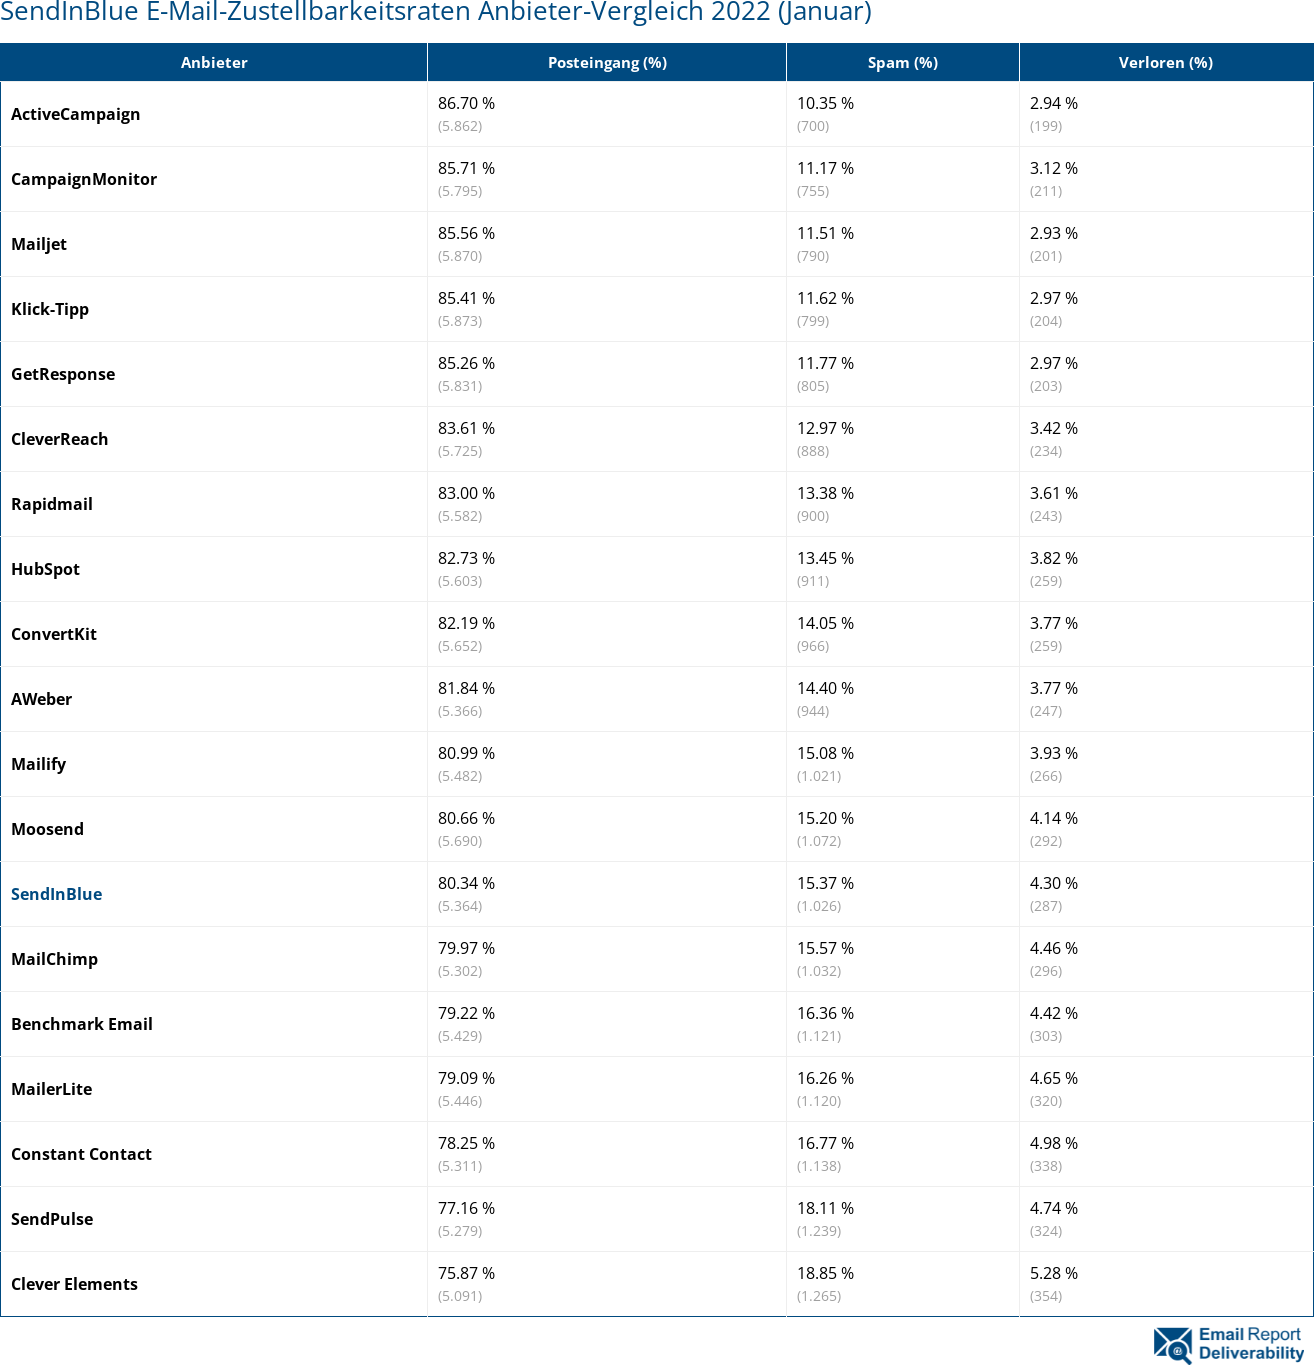 SendInBlue E-Mail-Zustellbarkeitsraten Anbieter-Vergleich 2022 (Januar)